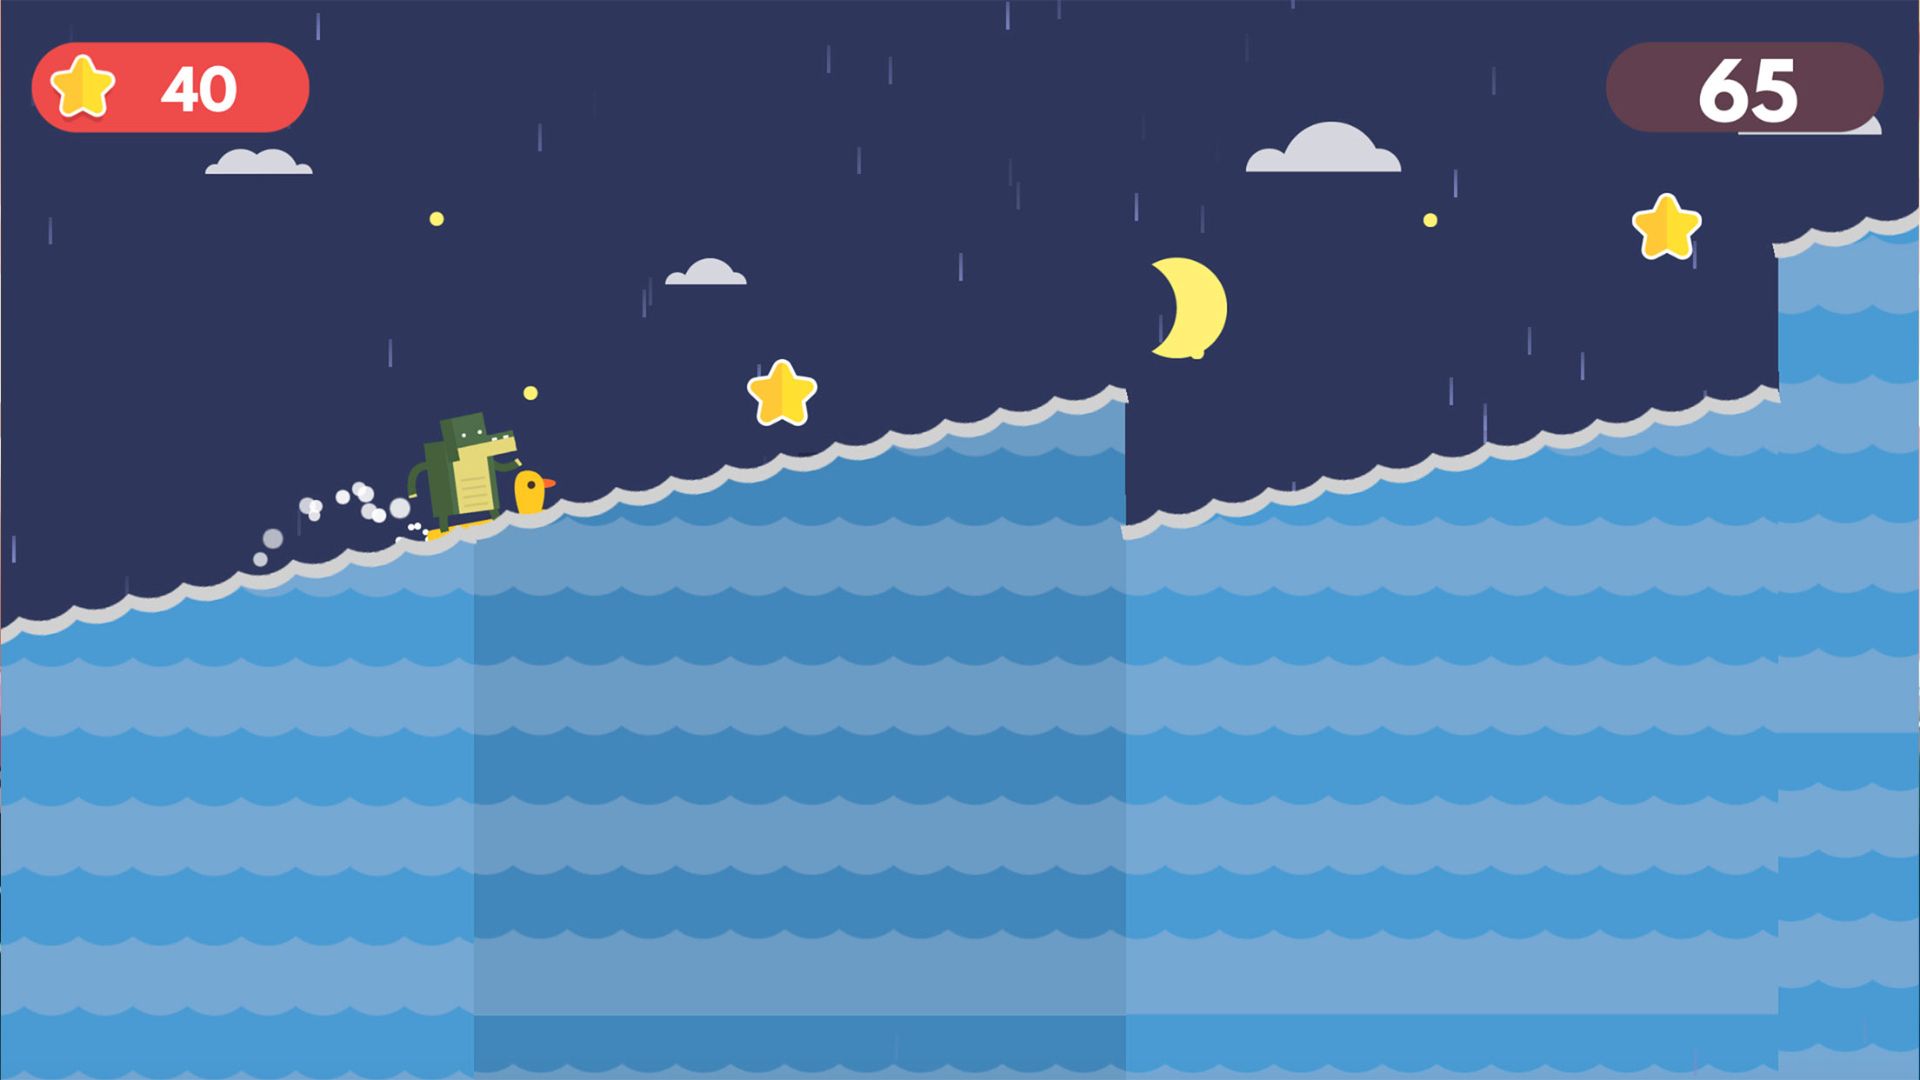 サーフィン ゲーム - 2D スクリーンショットでワニが波を滑空します。